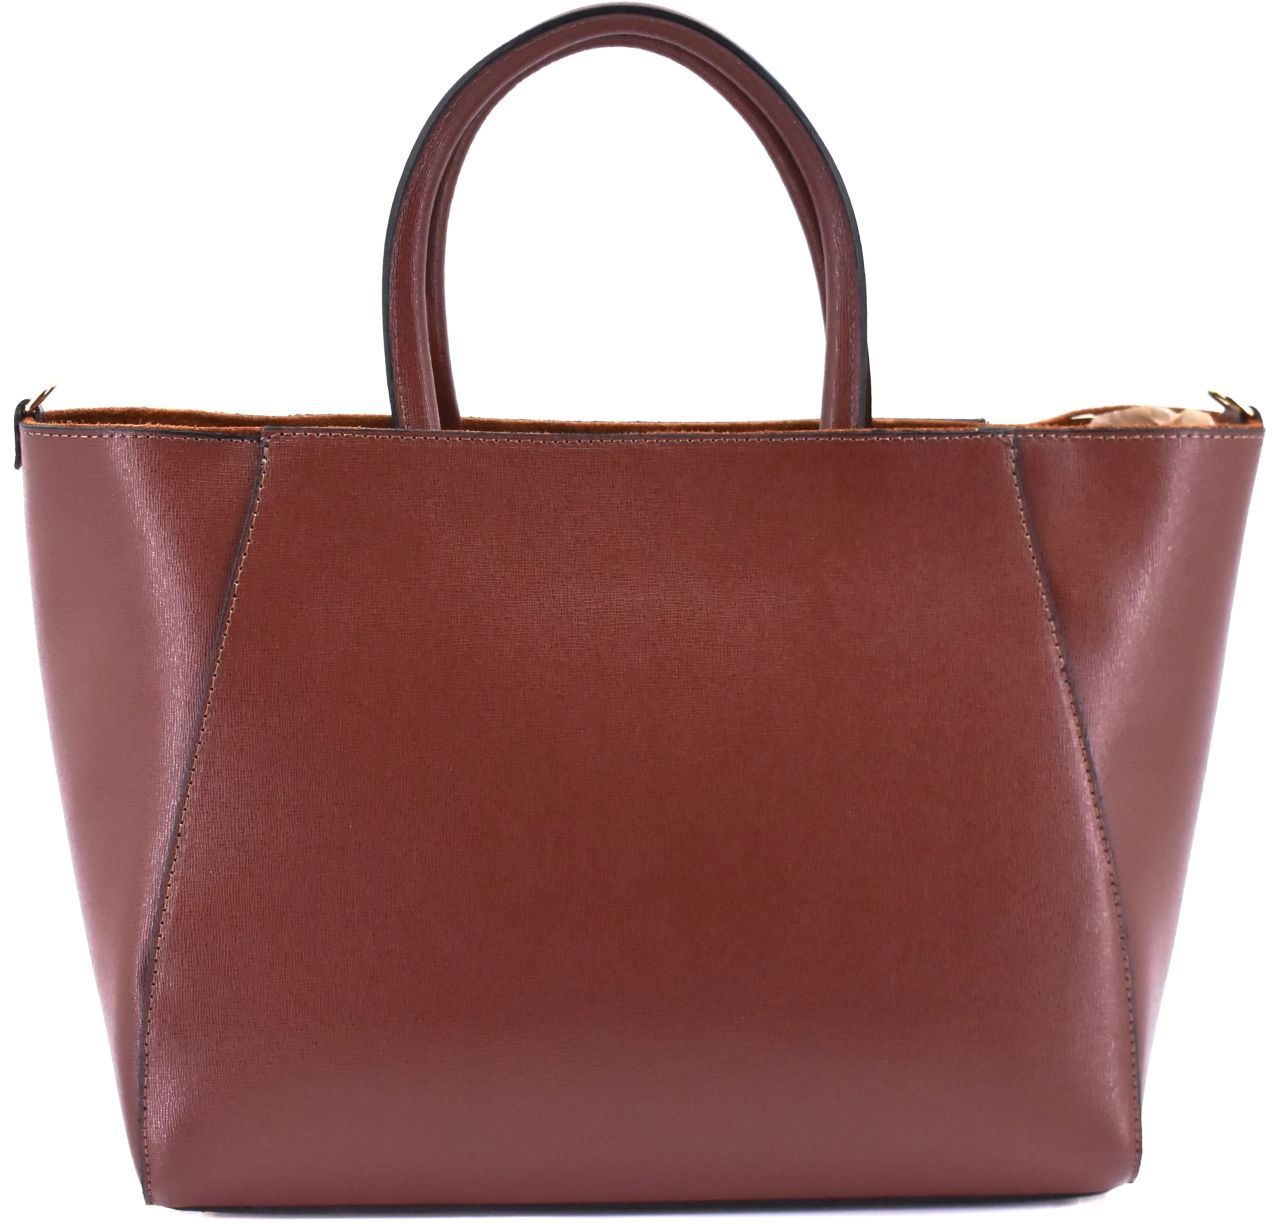 Moderní Shopper dámská kožená kabelka Arteddy - hnědá 32454